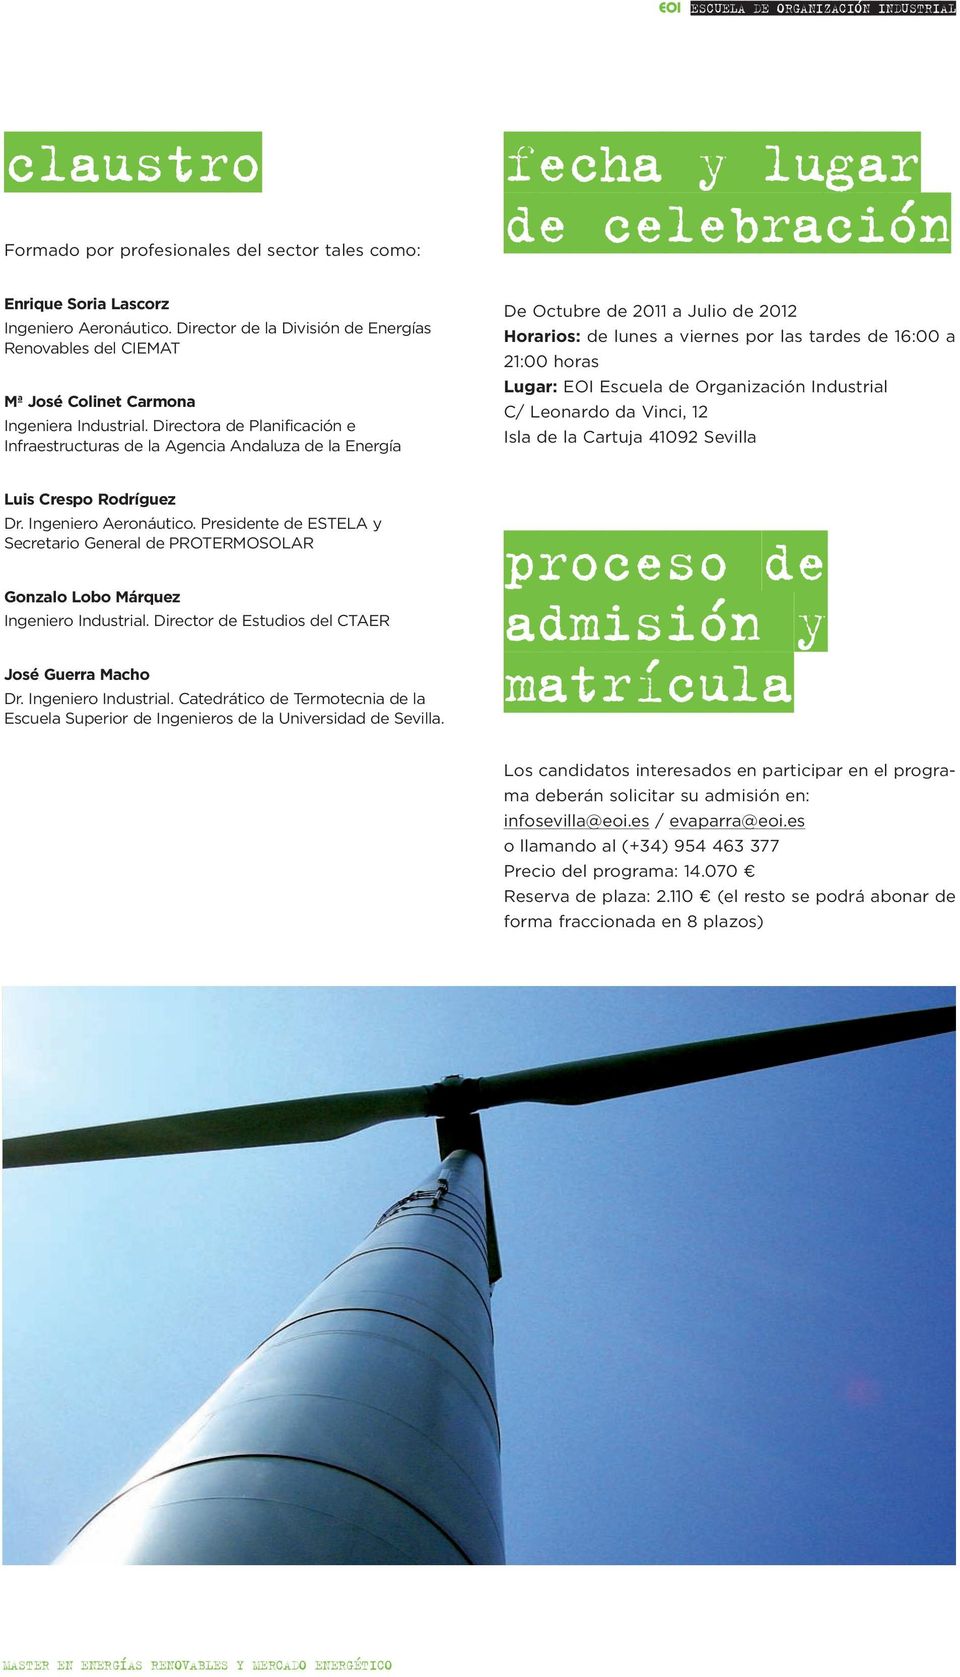 Directora de Planificación e Infraestructuras de la Agencia Andaluza de la Energía De Octubre de 2011 a Julio de 2012 Horarios: de lunes a viernes por las tardes de 16:00 a 21:00 horas Lugar: EOI